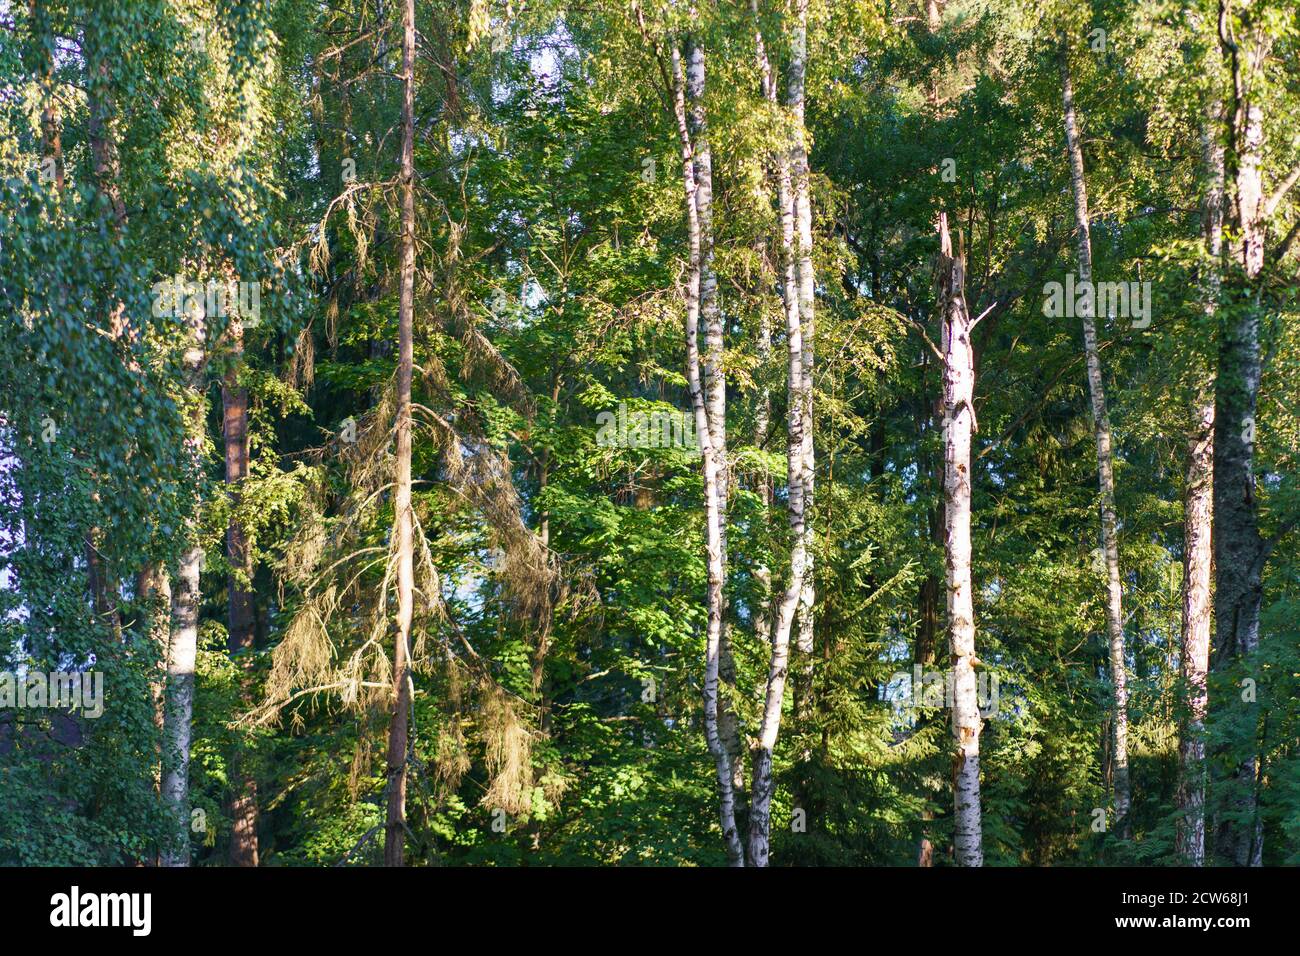 Photographie de forêt russe mixte. Jour ensoleillé d'été. Arbres hauts et fins. Feuillage vert et ciel bleu. Concept de la beauté dans la nature. Thème de la santé Banque D'Images